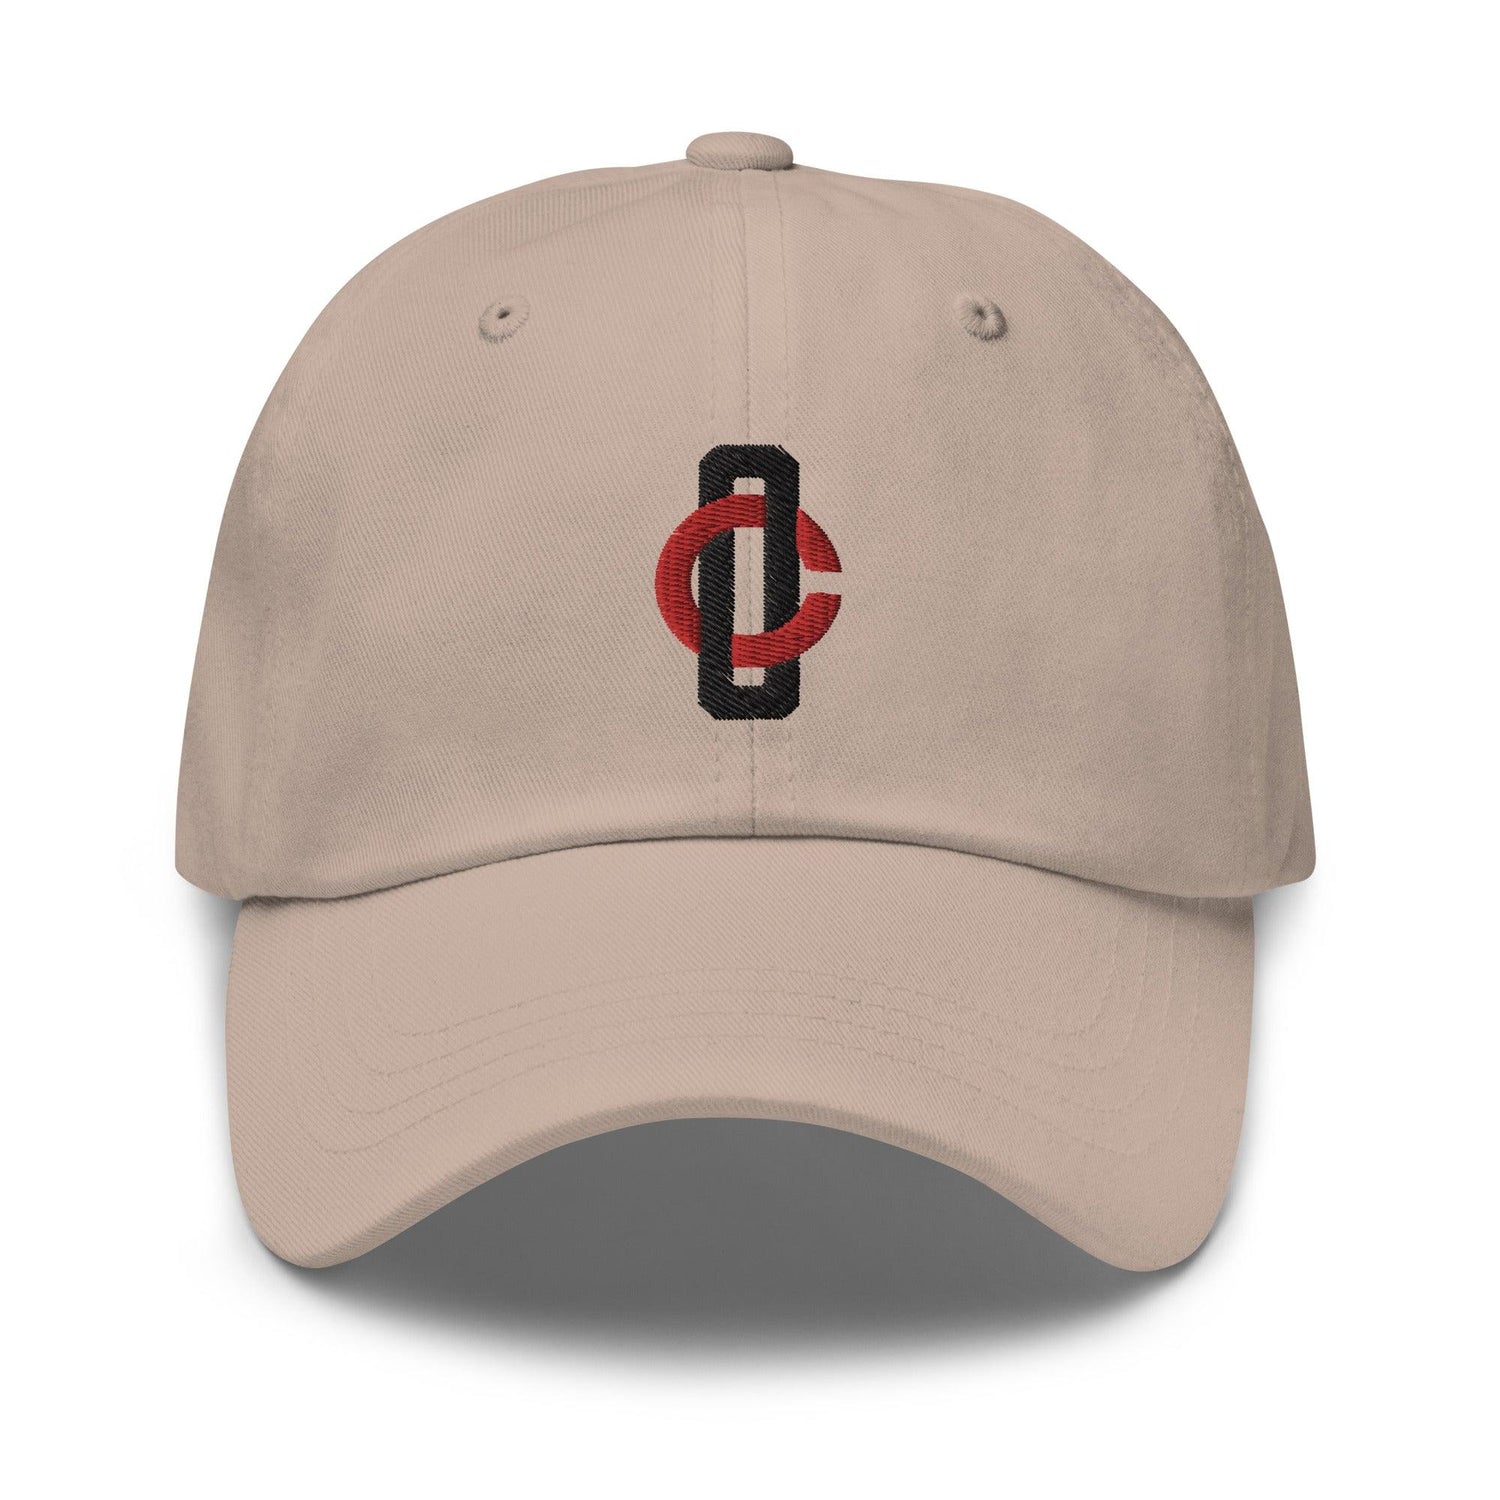 Chris Okey "Essential" hat - Fan Arch